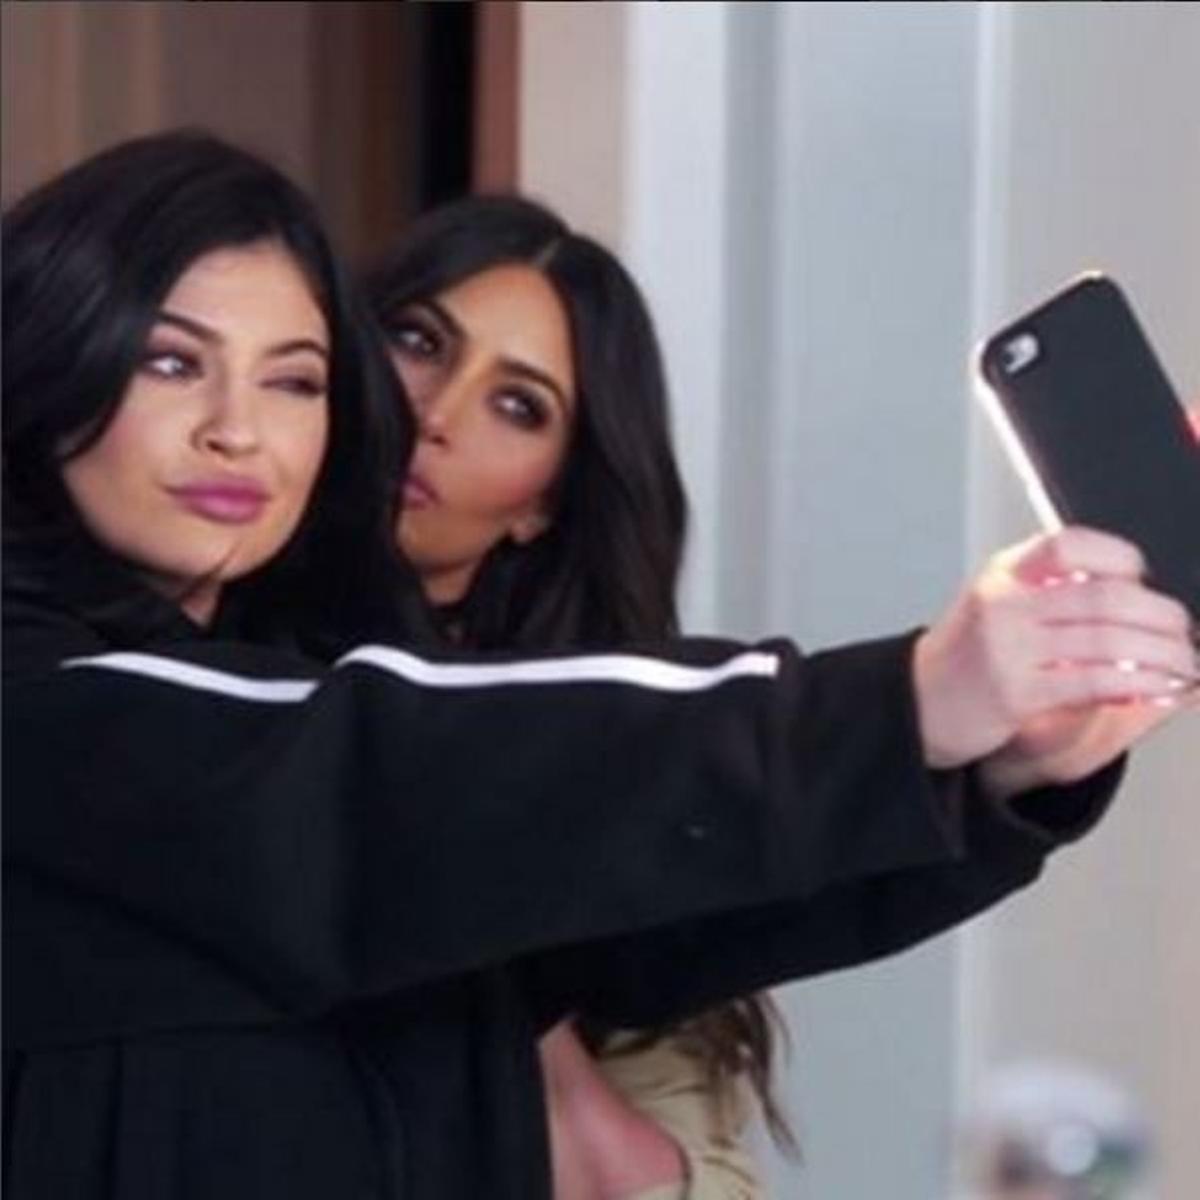 El secreto del selfie de Kim Kardashian y Kylie Jenner